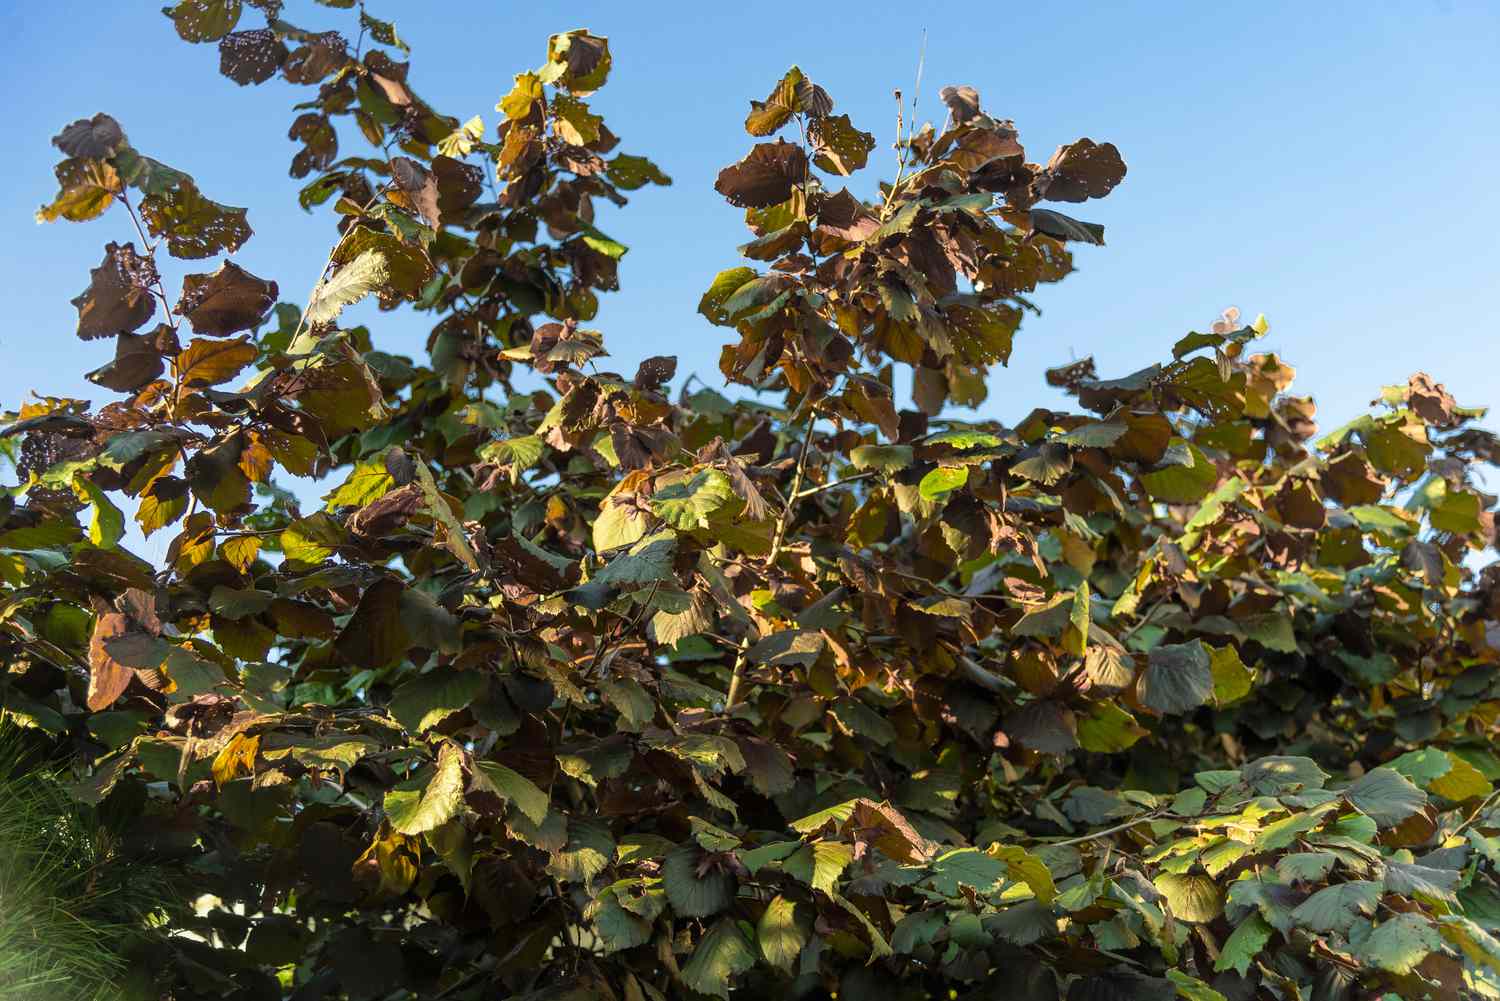 Schnabelhaselnussstrauch mit braunen und grünen Blättern an hohen Ästen